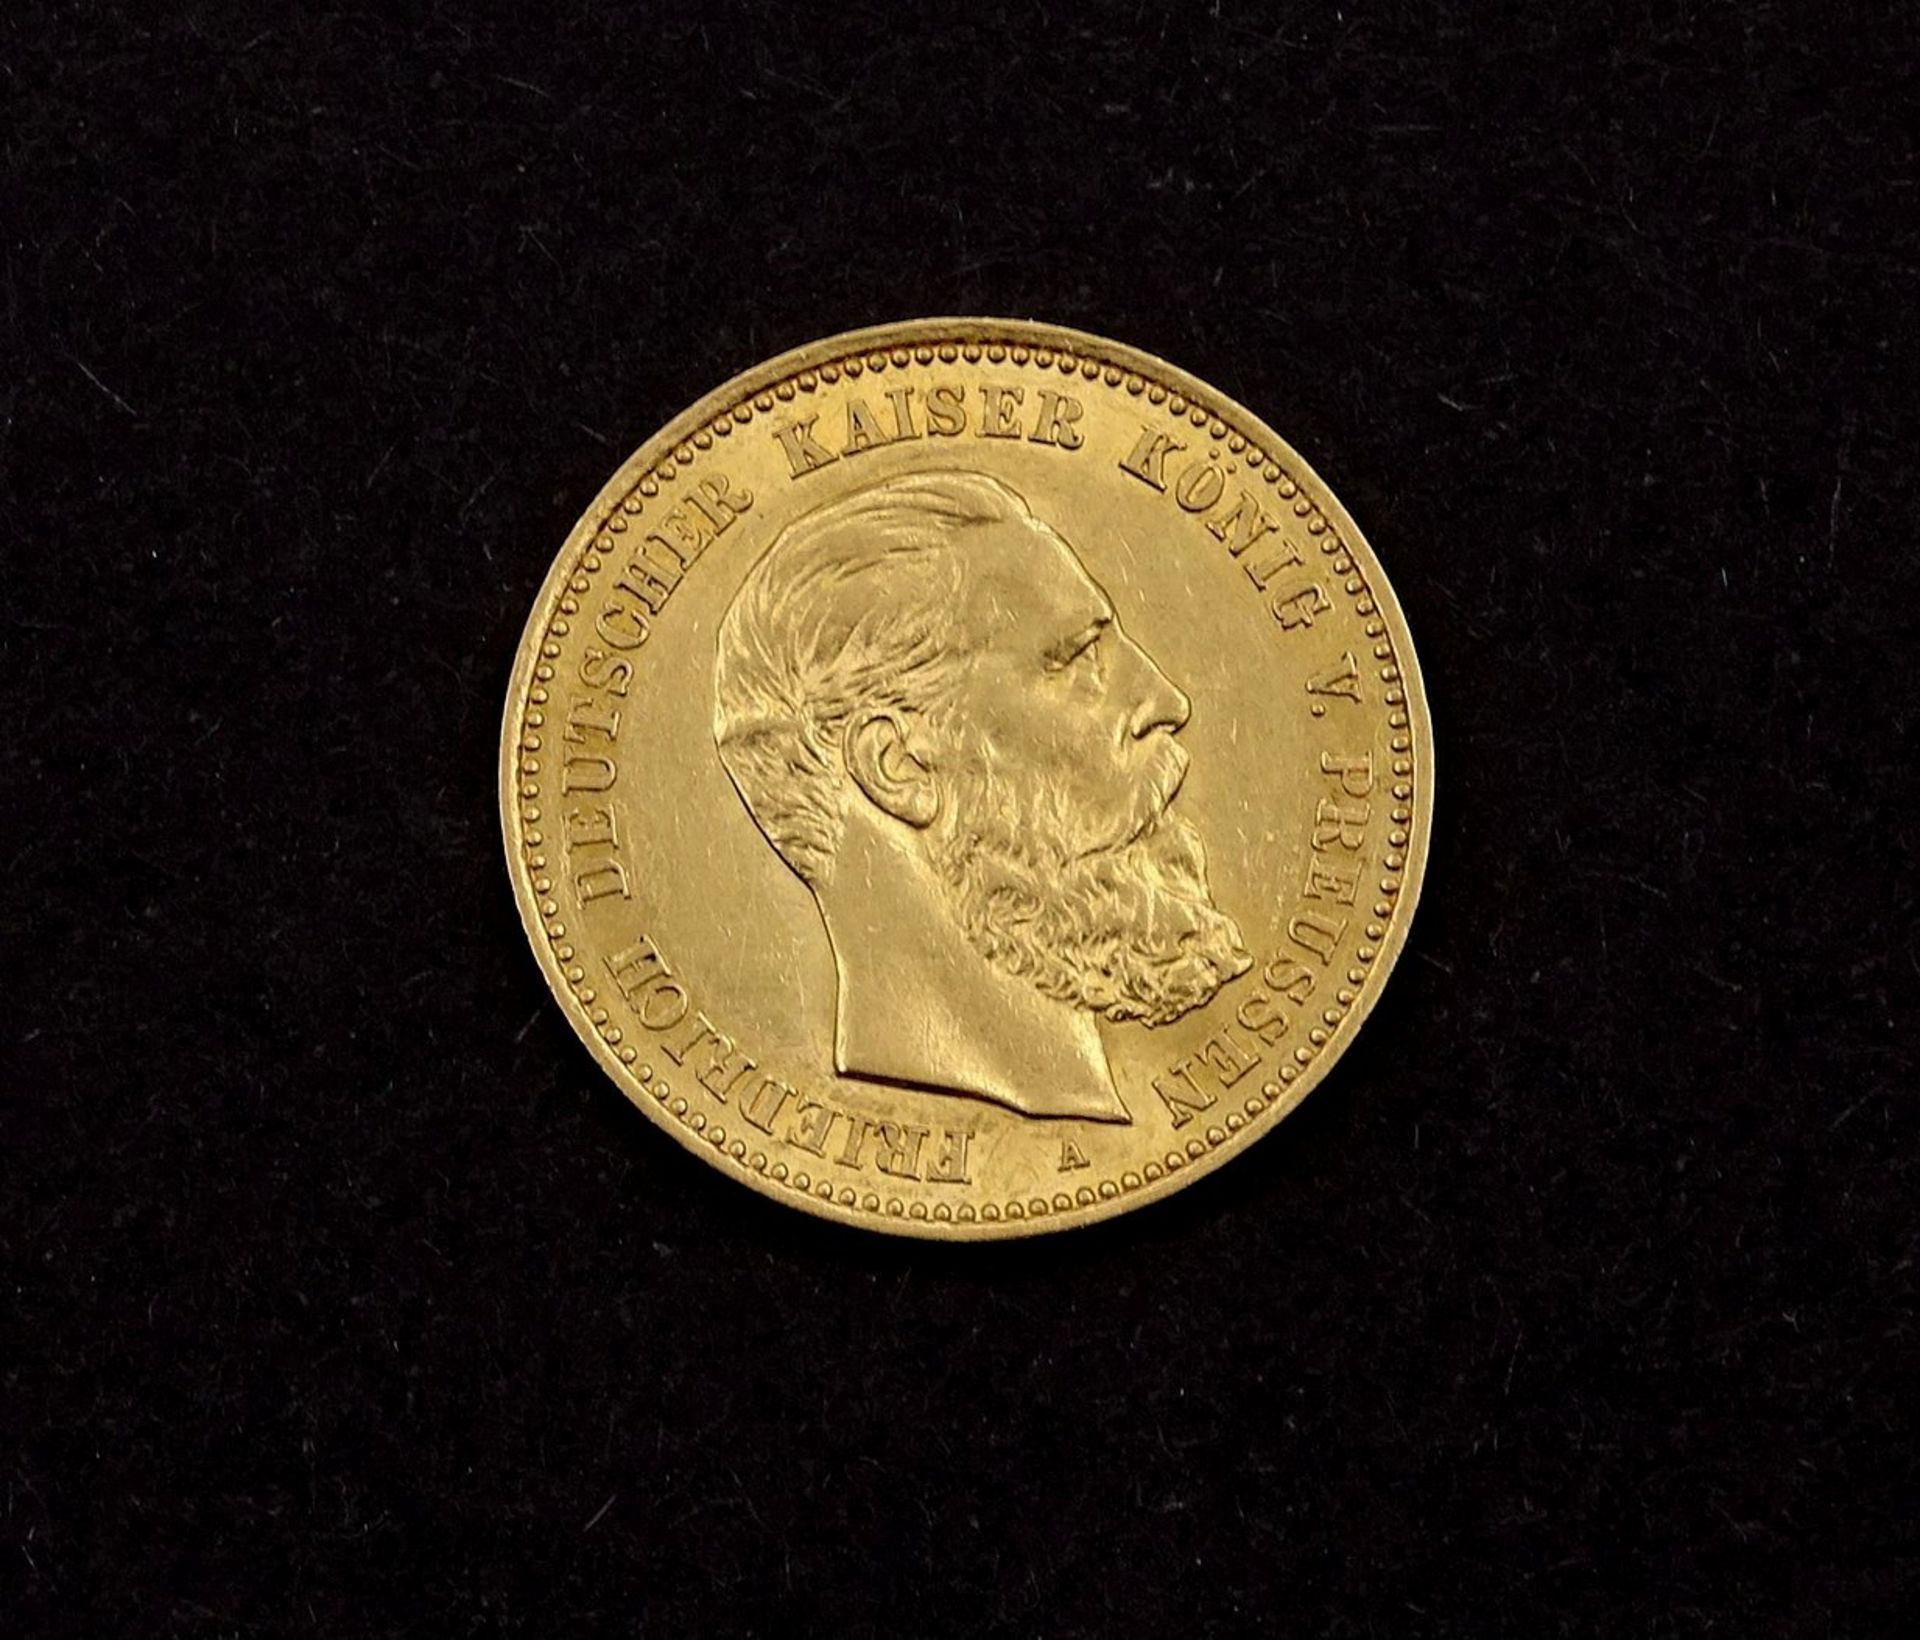 Goldmünze 10 Mark 1888 Fr. Deutscher Kaiser König v. Preussen A, 3,9g., D. 19,4mm